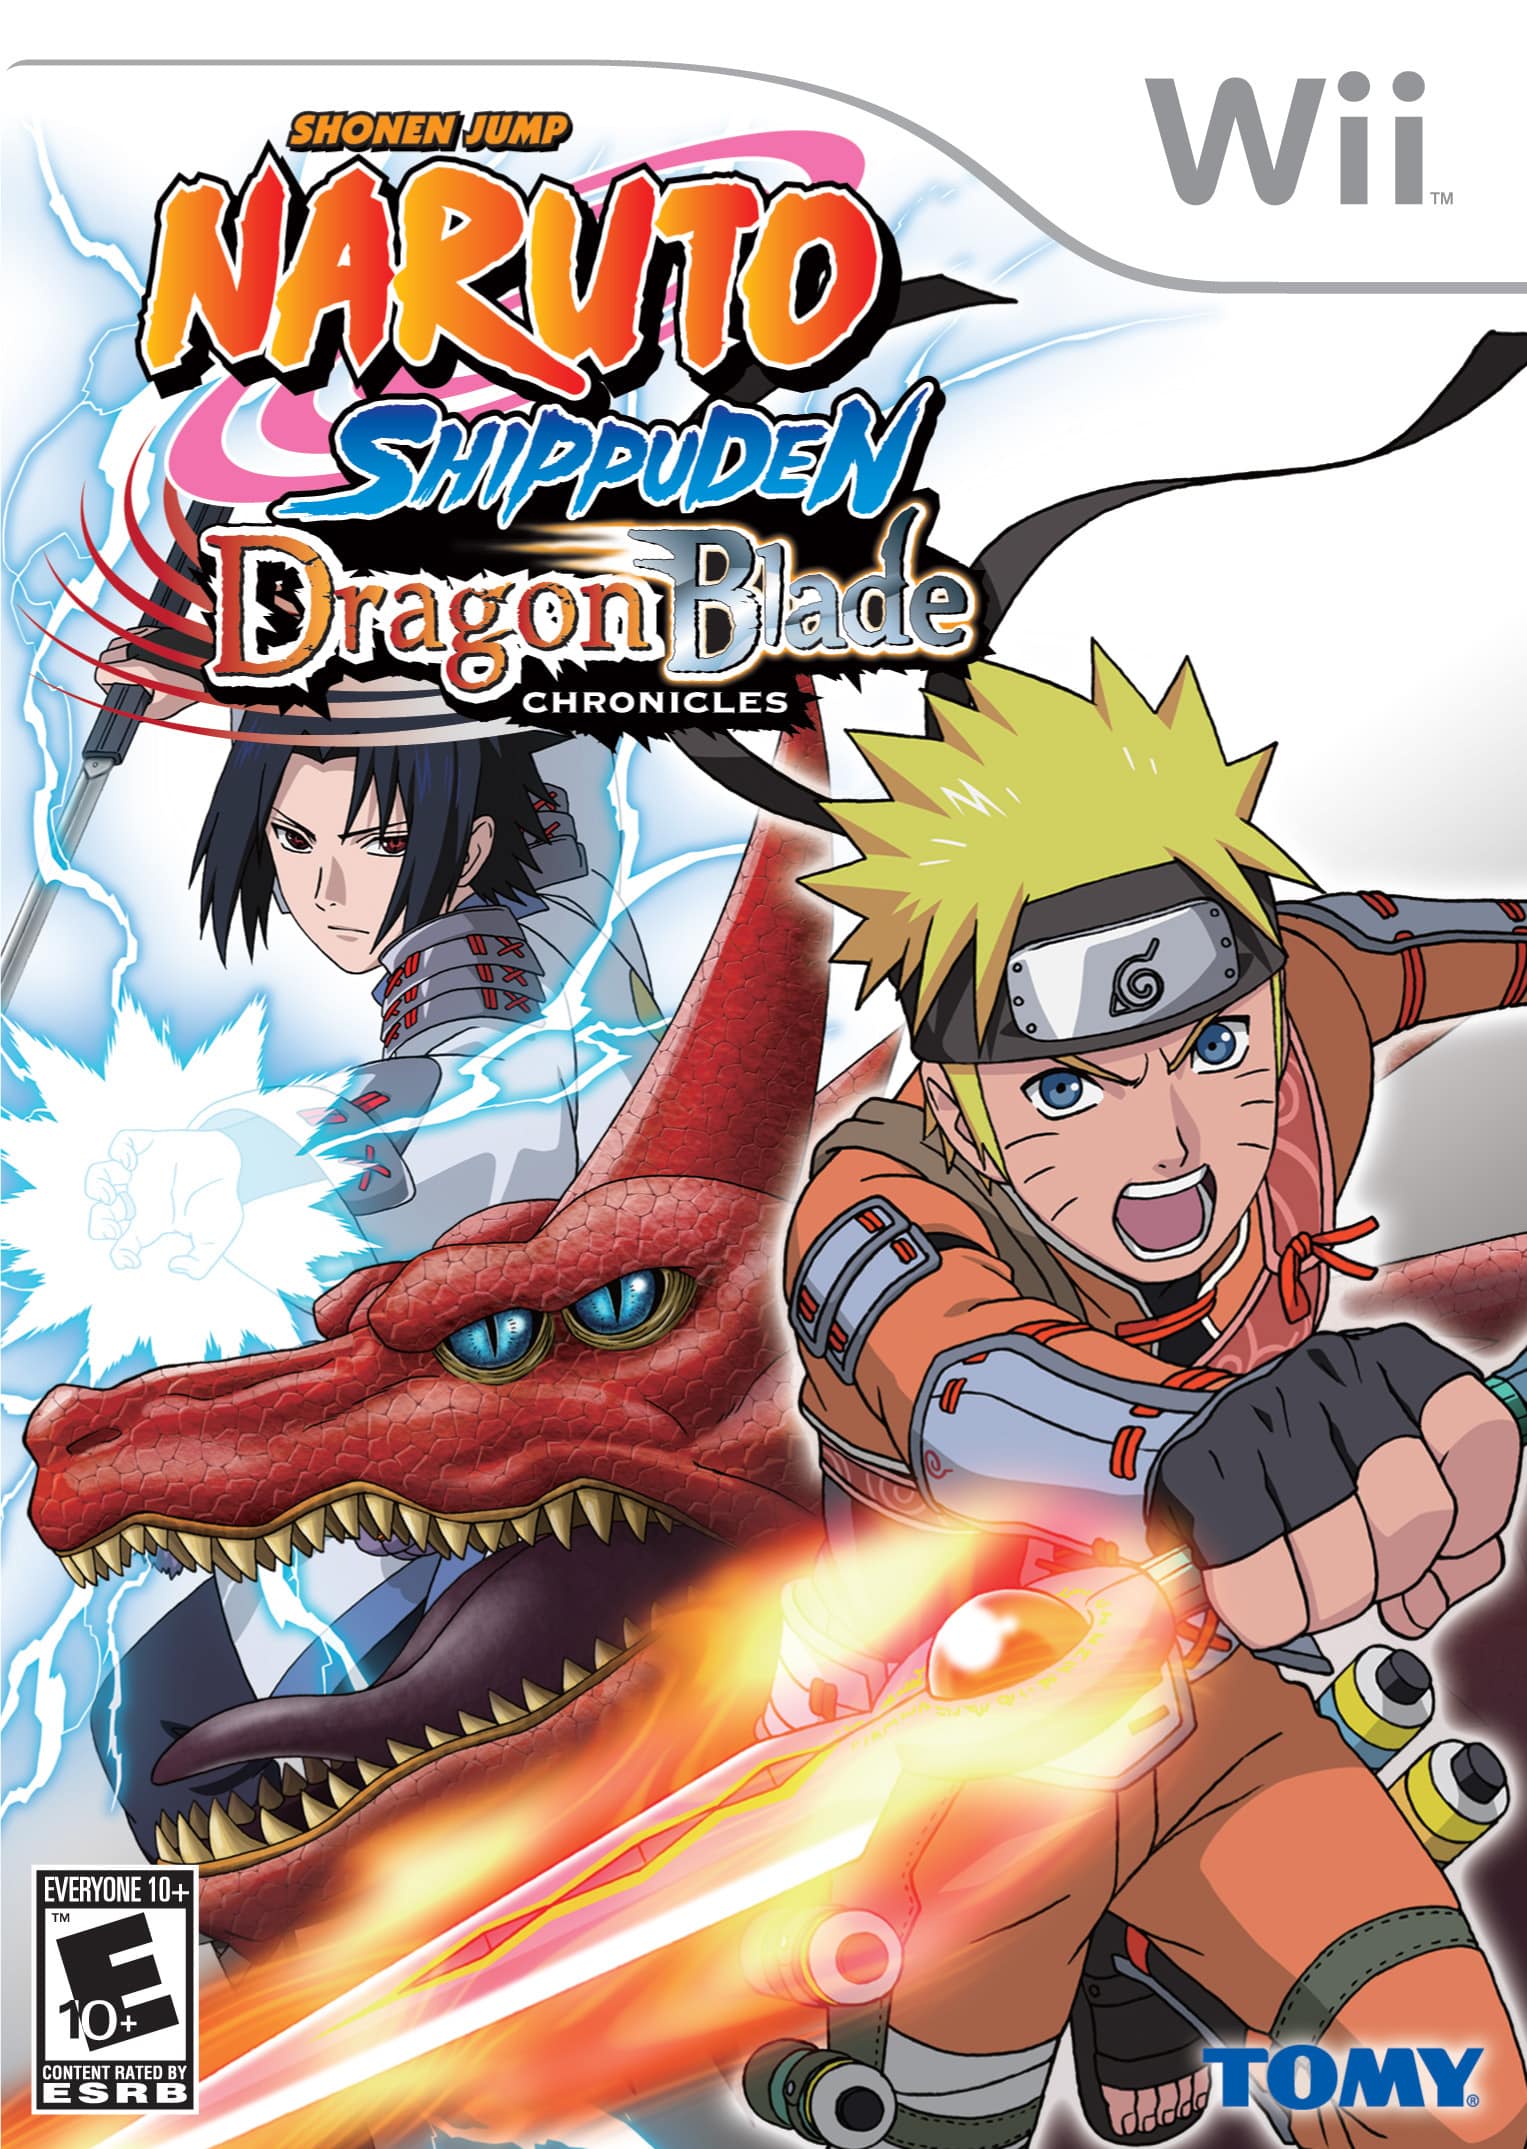 Naruto Shippuden Dragon Blade Chronicles walkthrough video guide (Wii)